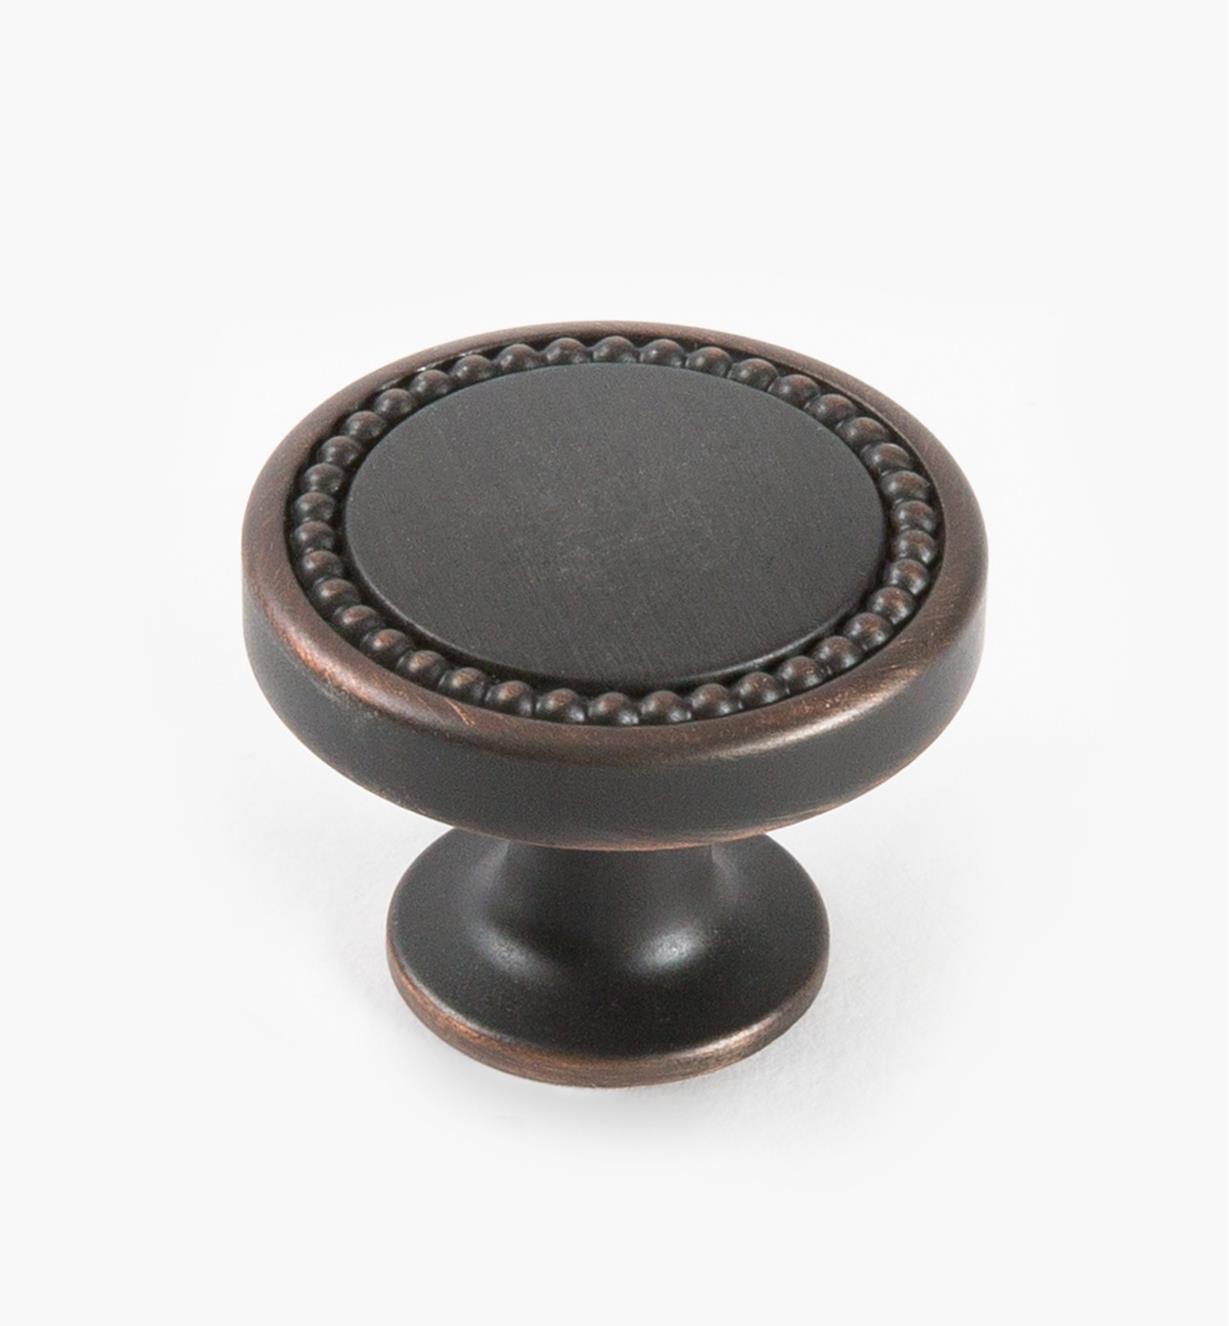 02A1631 - Bouton rond Carolyne, 35 mm (1 3/8 po), bronze huilé, l'unité